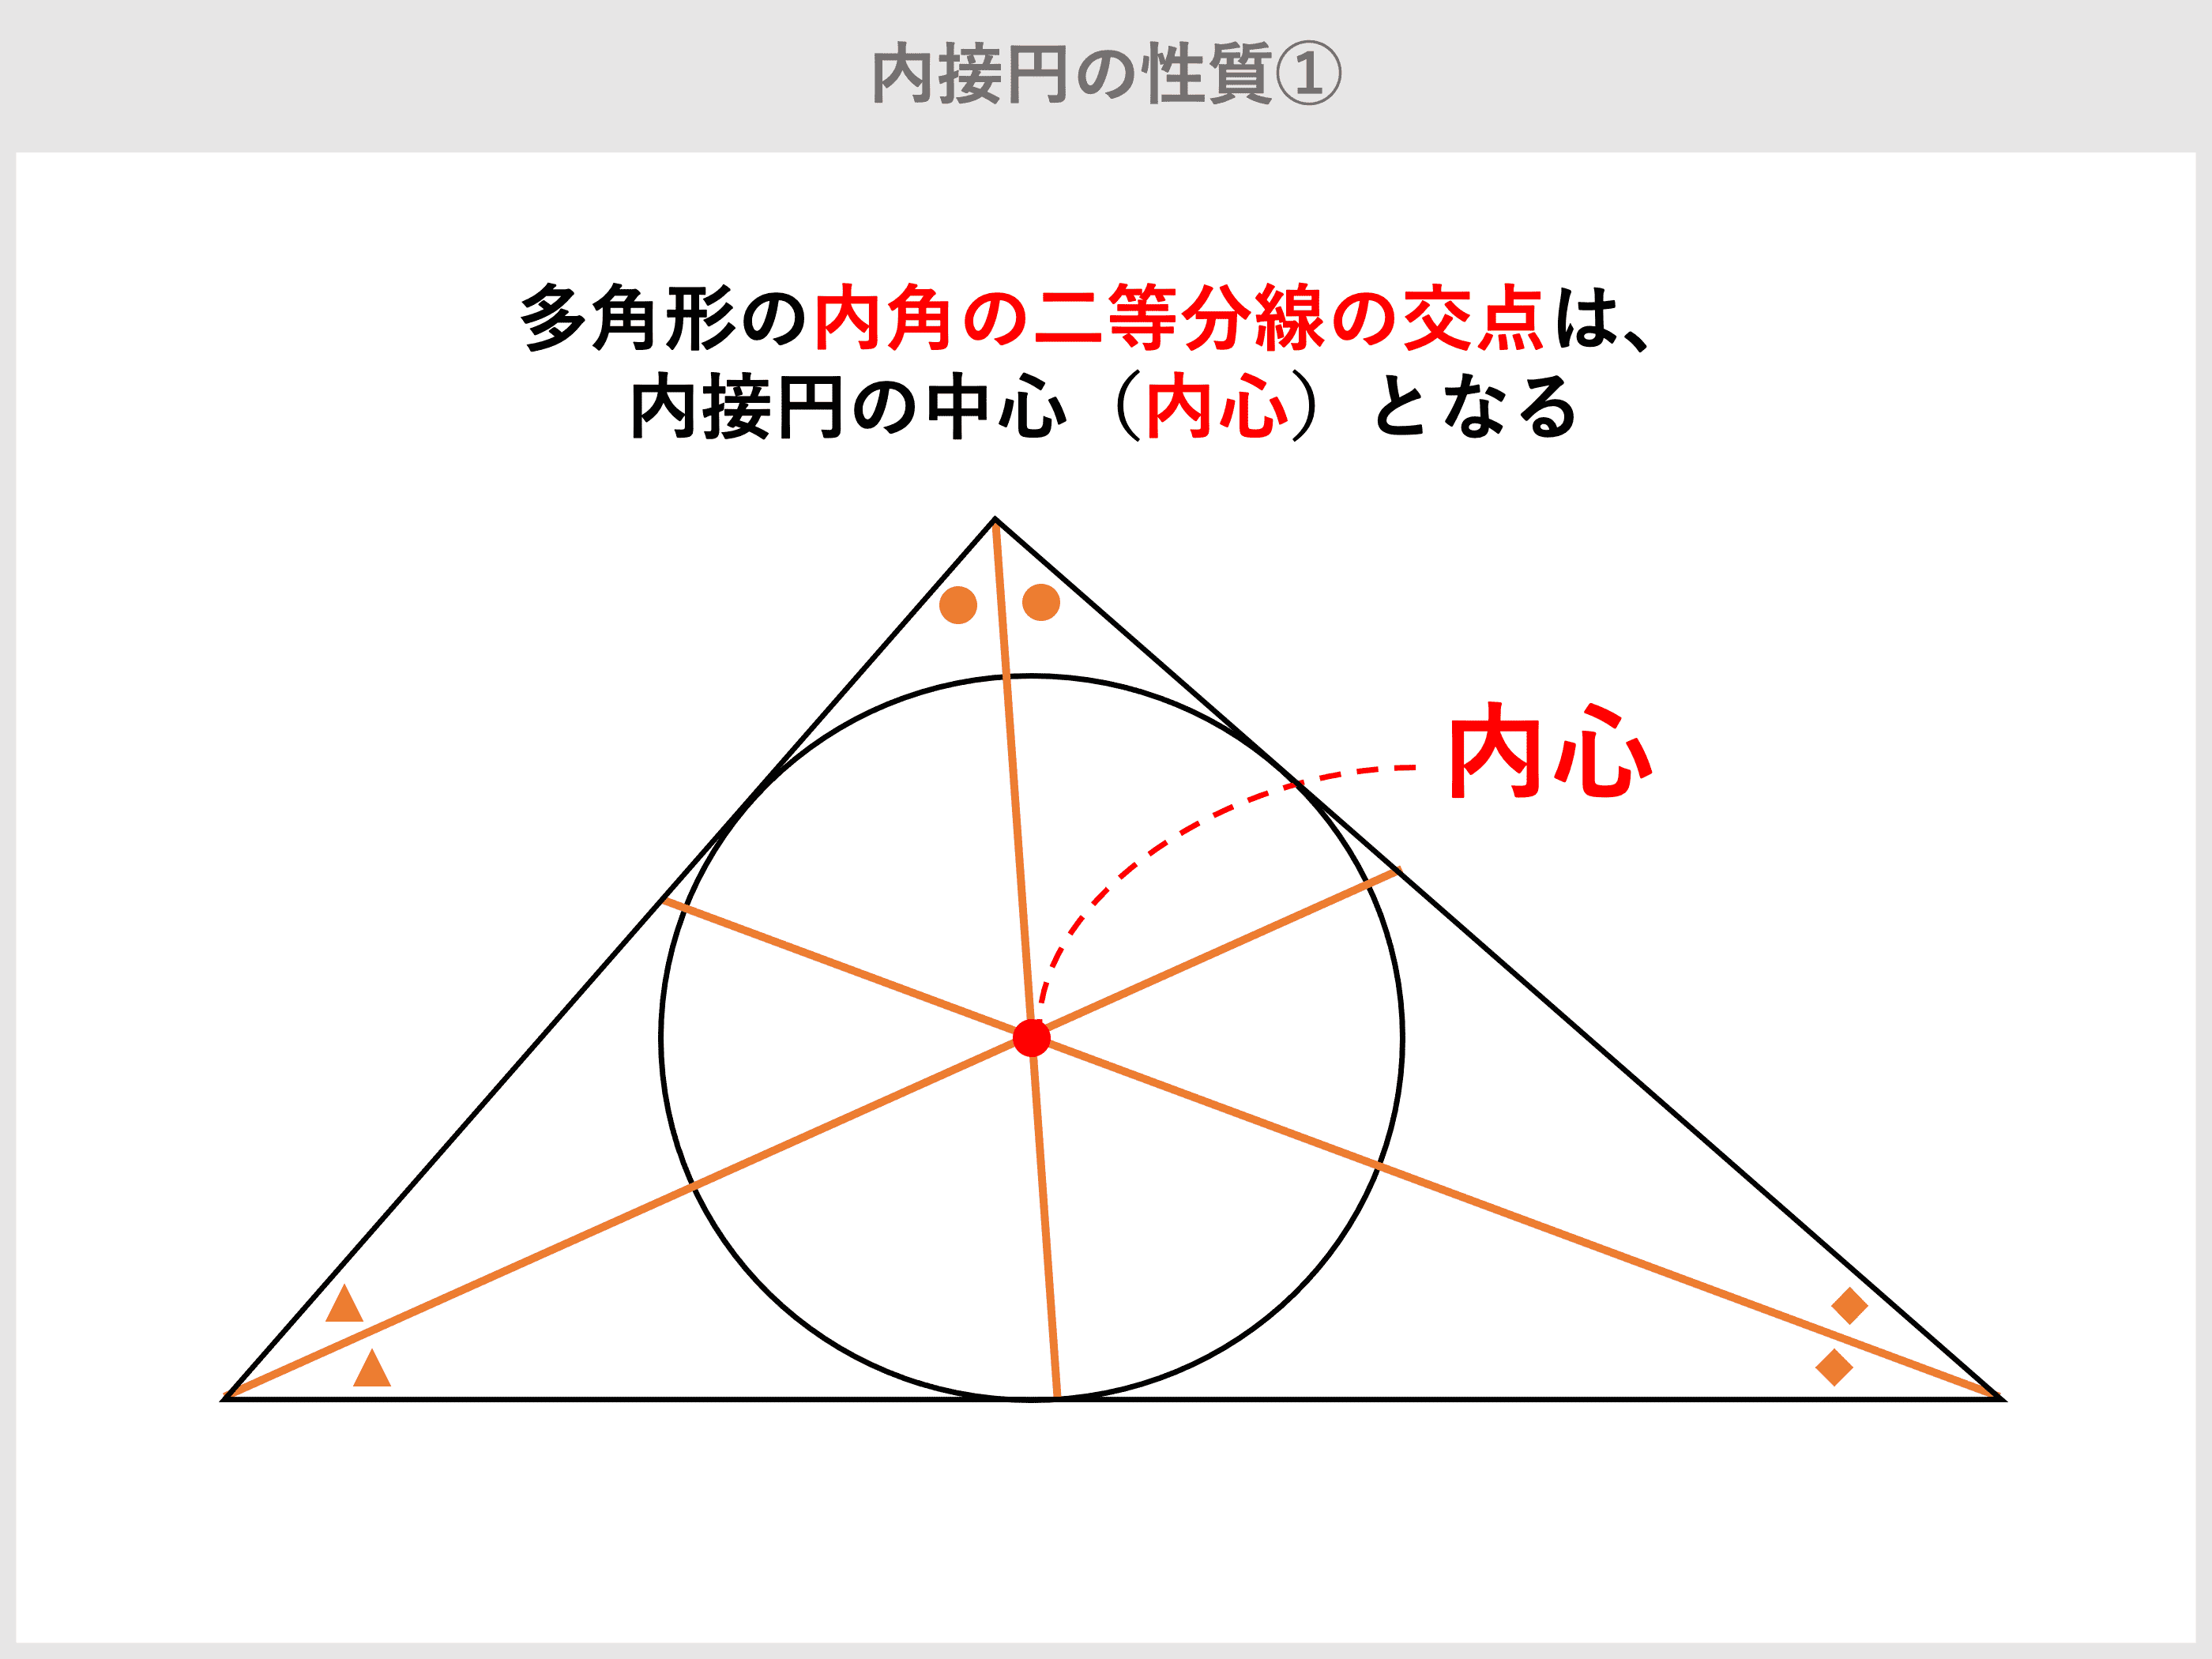 円 に 外接 する 三角形